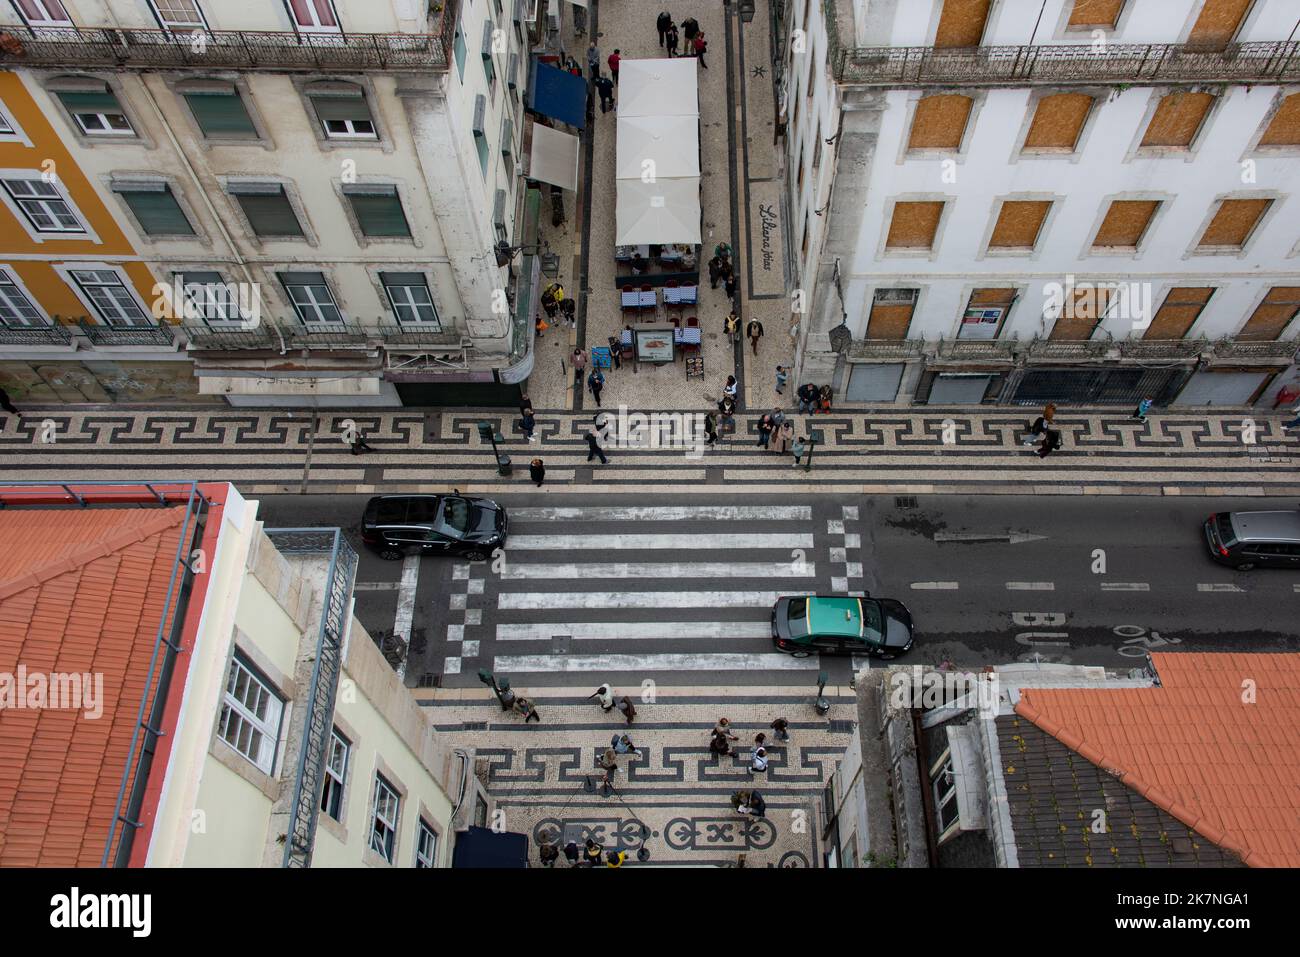 Marché dans la rue, Lisbonne, Portugal Banque D'Images